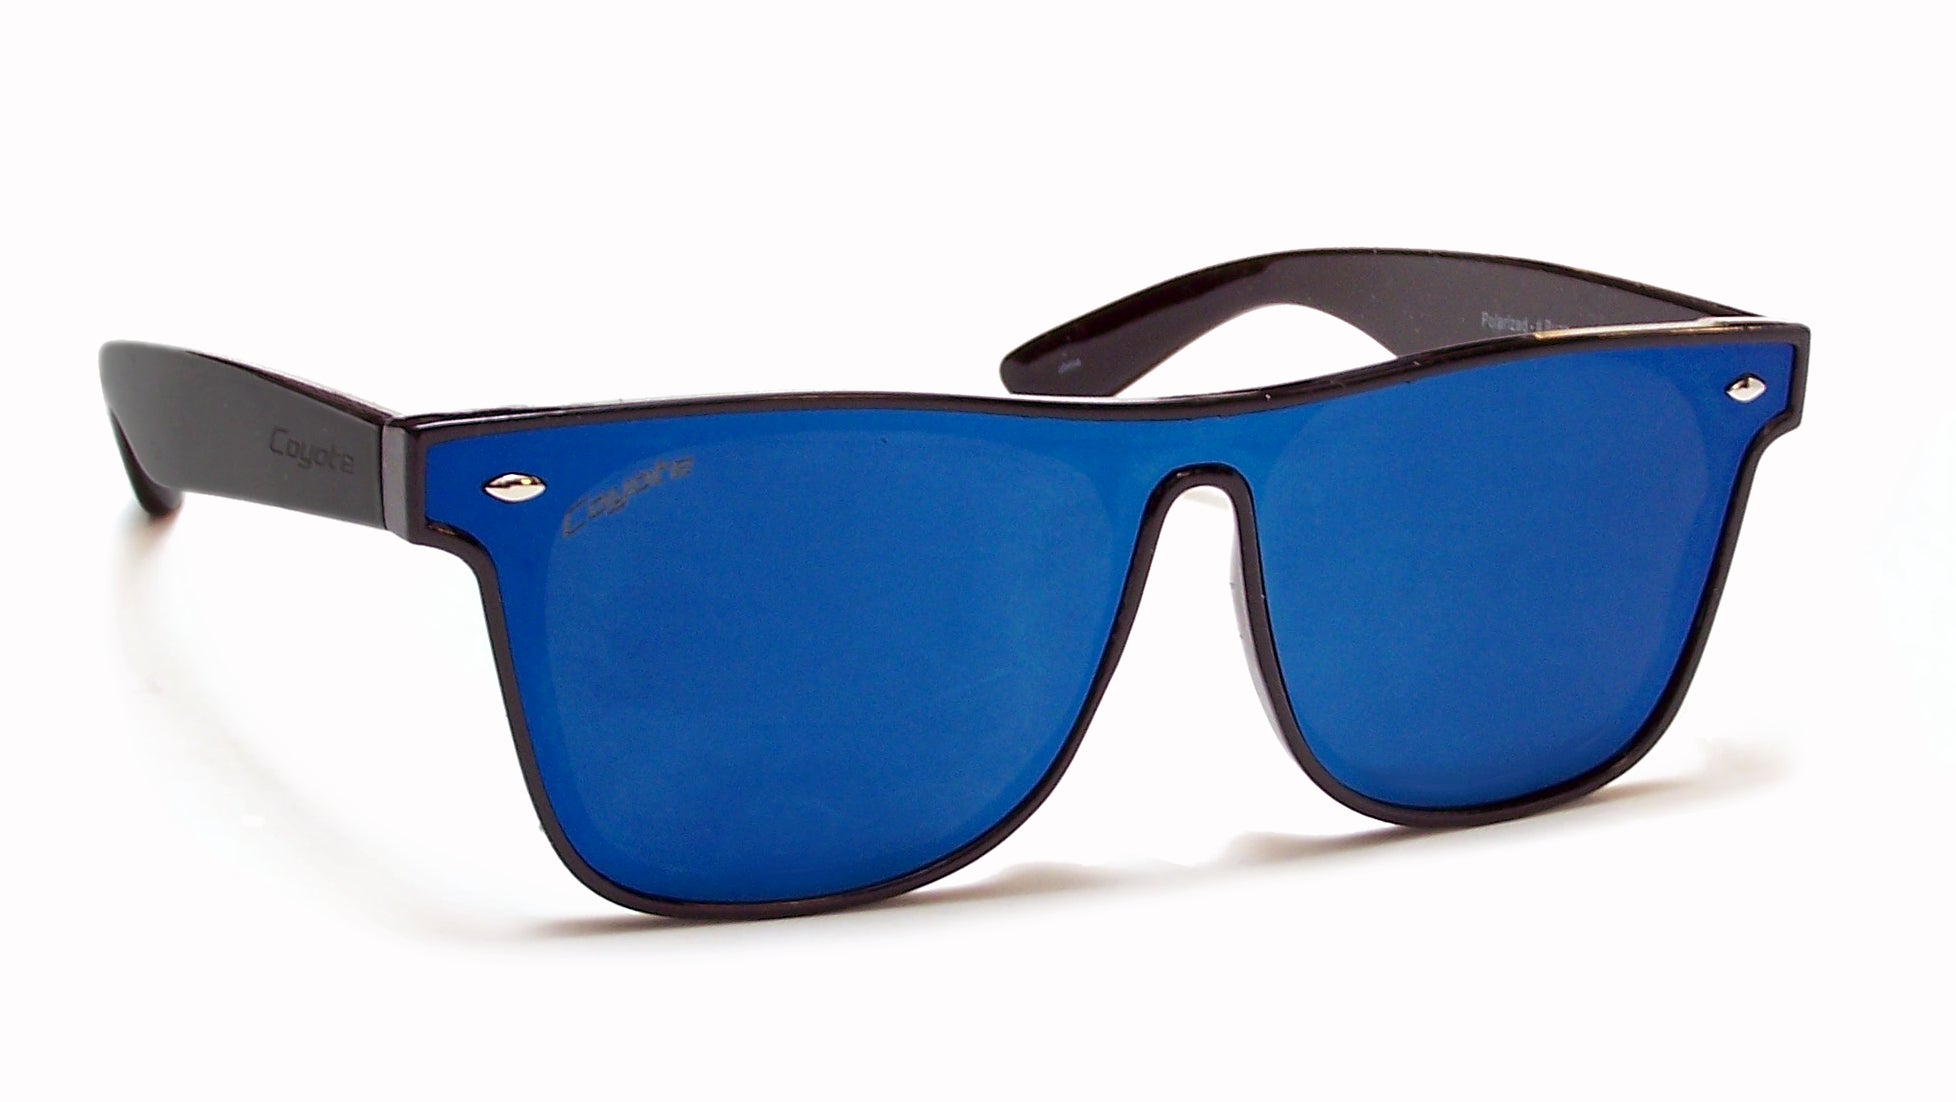 Reefton PRO Polarized Sunglasses in Blue Mirror | Costa Del Mar®